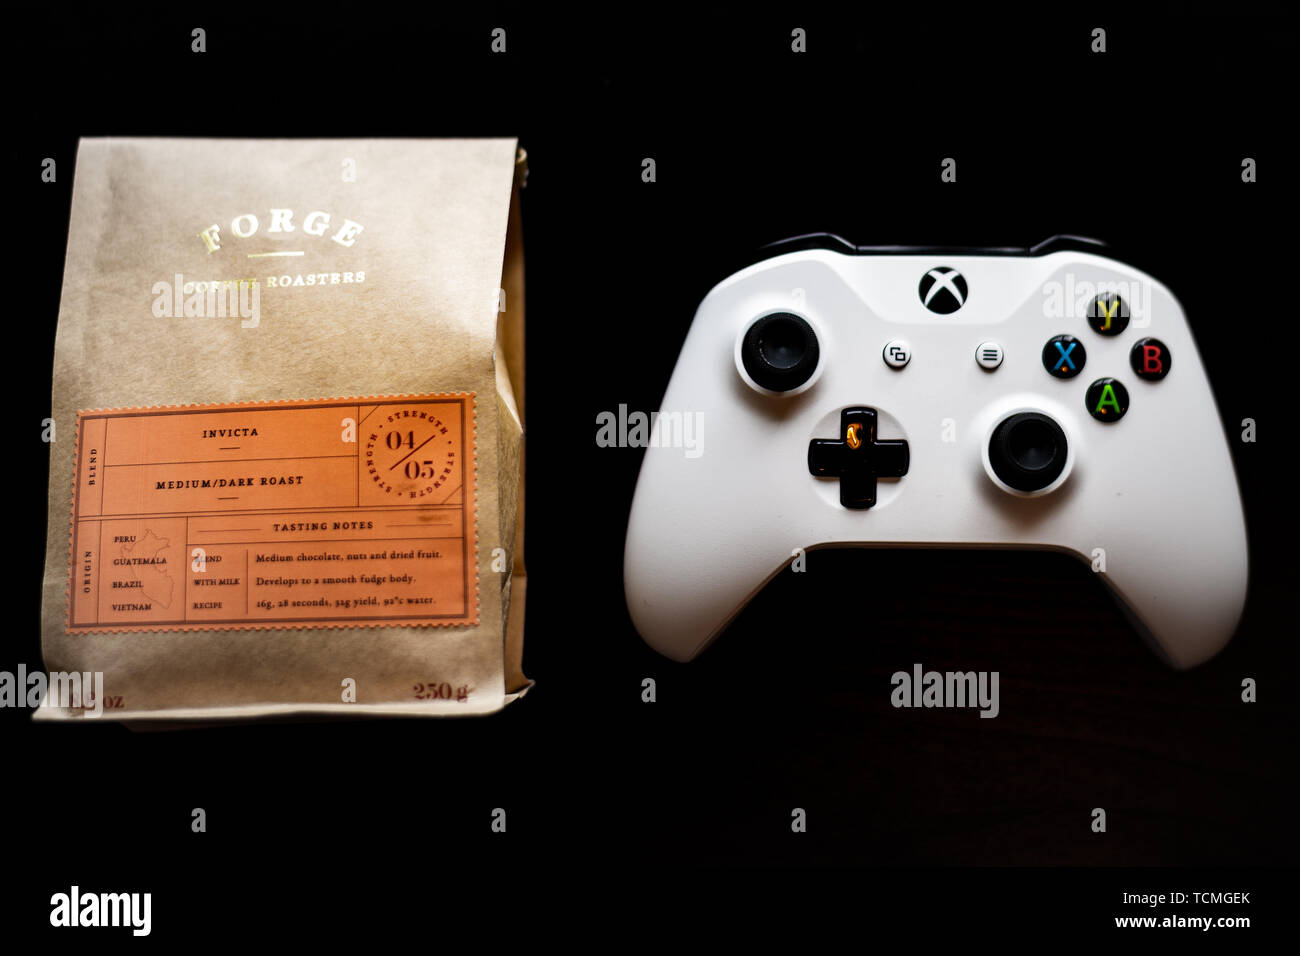 Controlador de juegos Xbox uno sentado junto a una bolsa de café molido contra un fondo negro oscuro Foto de stock